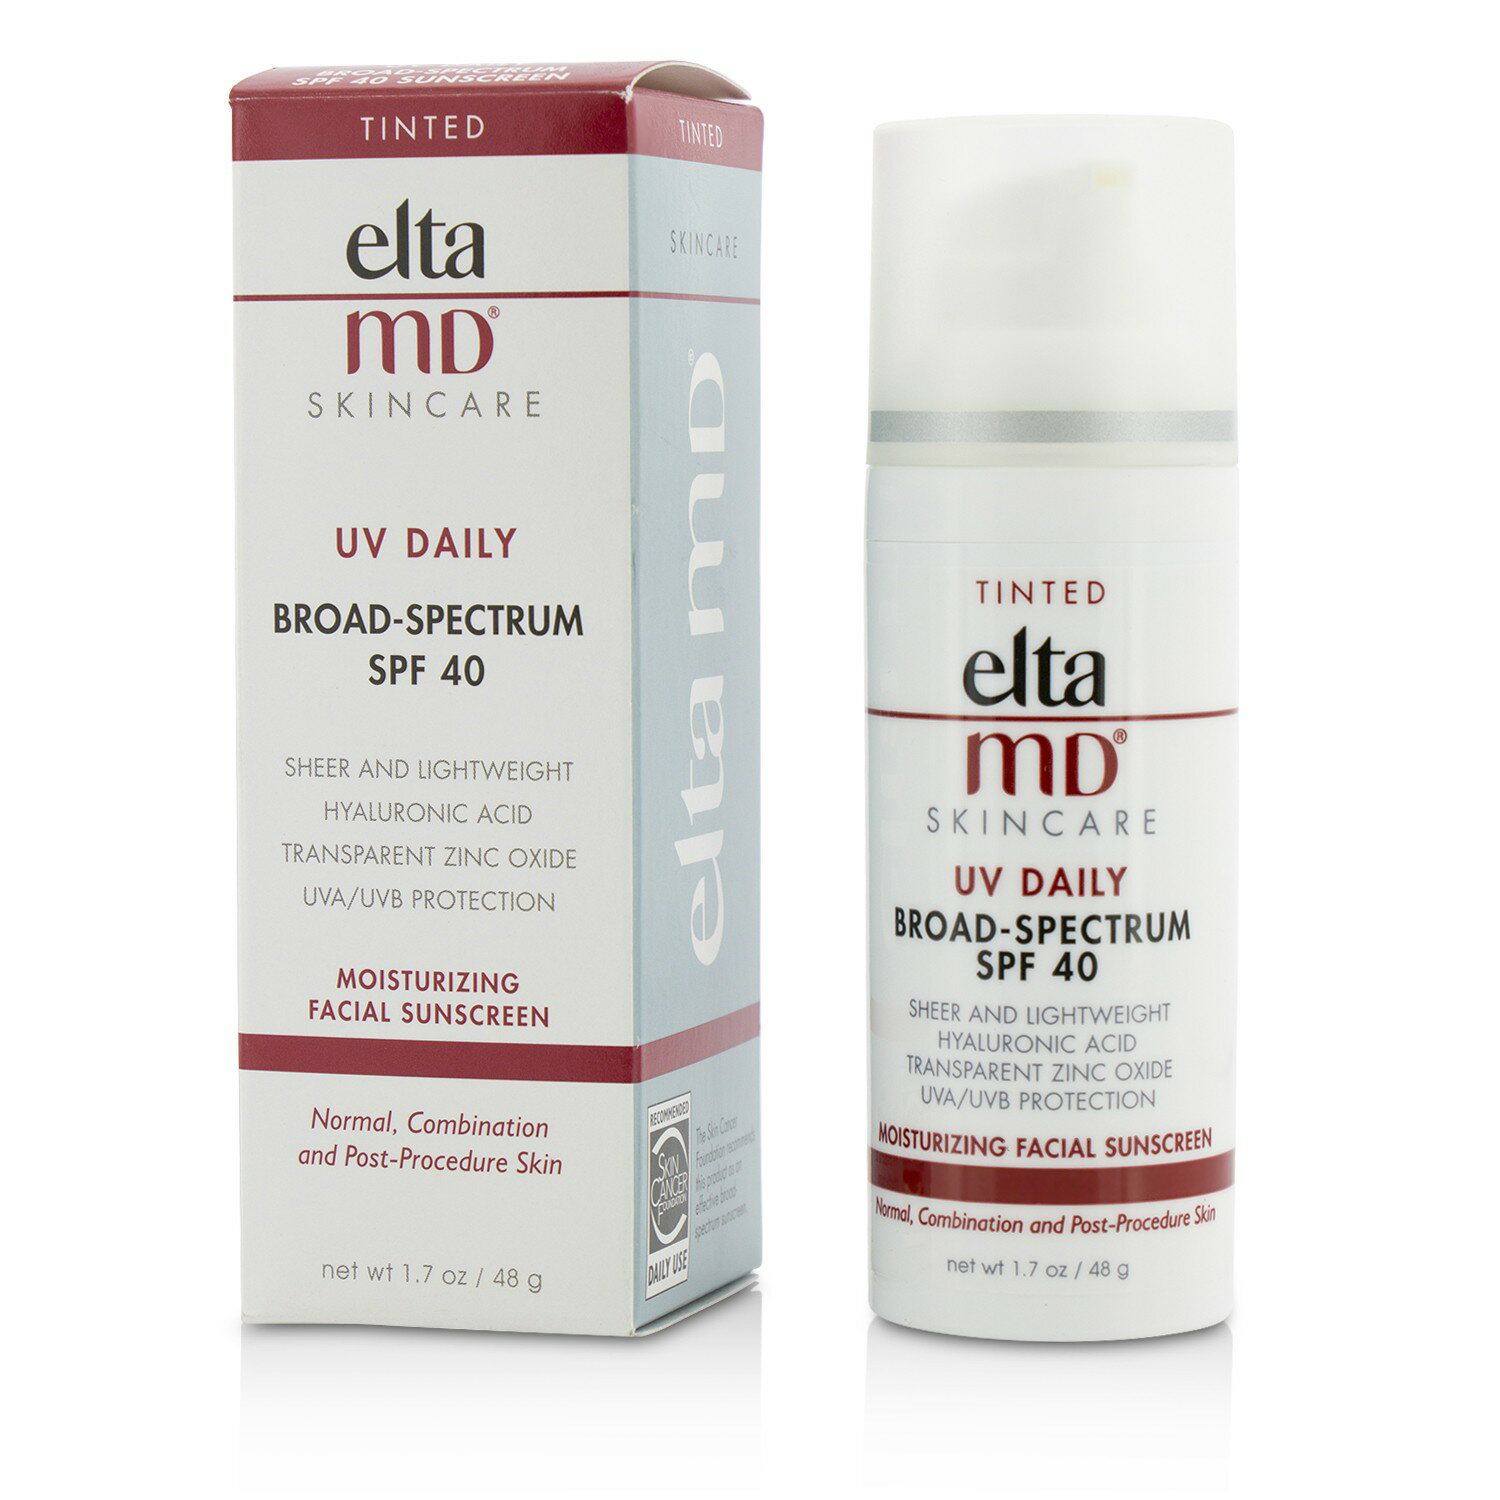 創新專業保養品 EltaMD - 全日修復防曬霜 SPF 40 (適合中性, 混合性和手術後肌膚) - 潤色